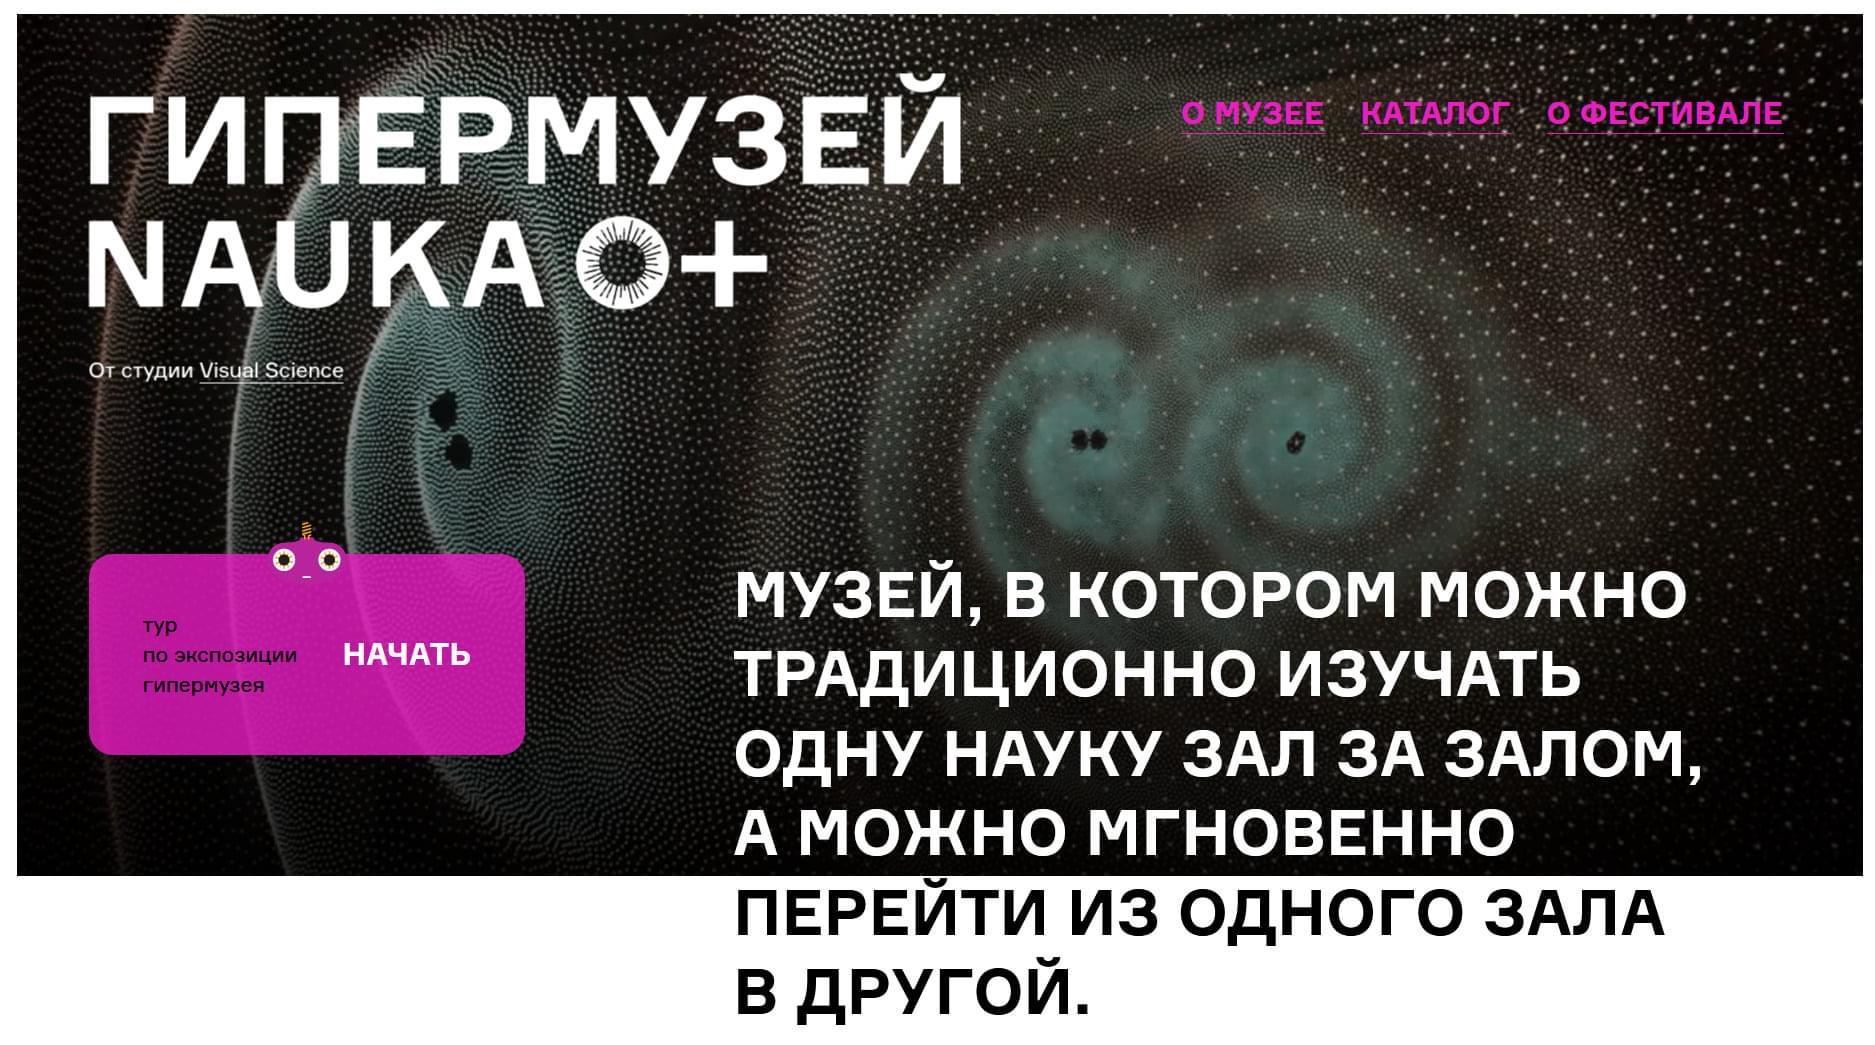 Новый проект "Гипермузей NAUKA 0+" представлен на X Всероссийском фестивале науки